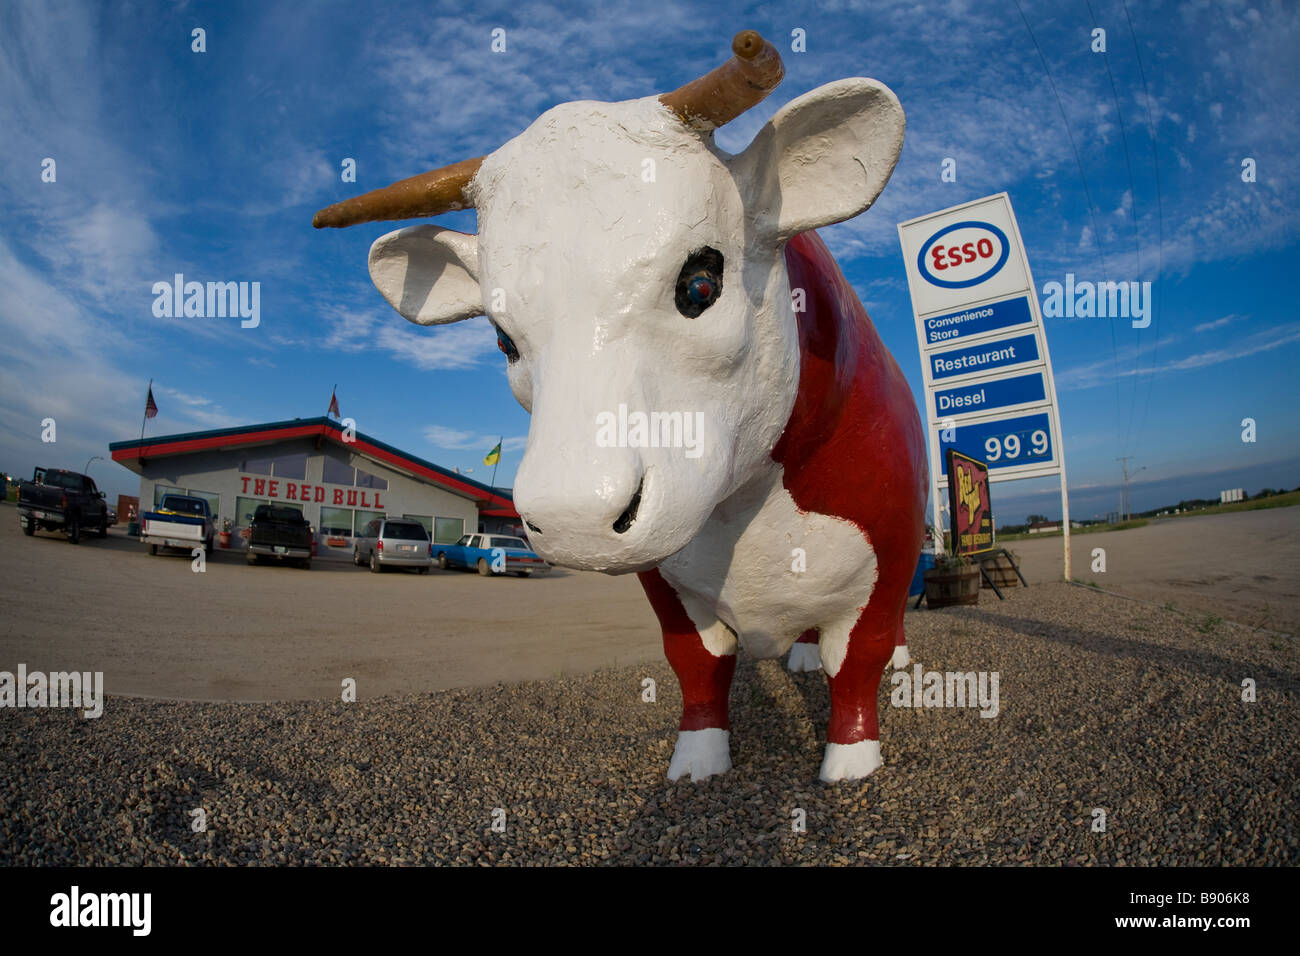 Le Red Bull roadside attraction, stop, station essence Esso, et restaurant familial à Radisson, en Saskatchewan Photo Stock - Alamy